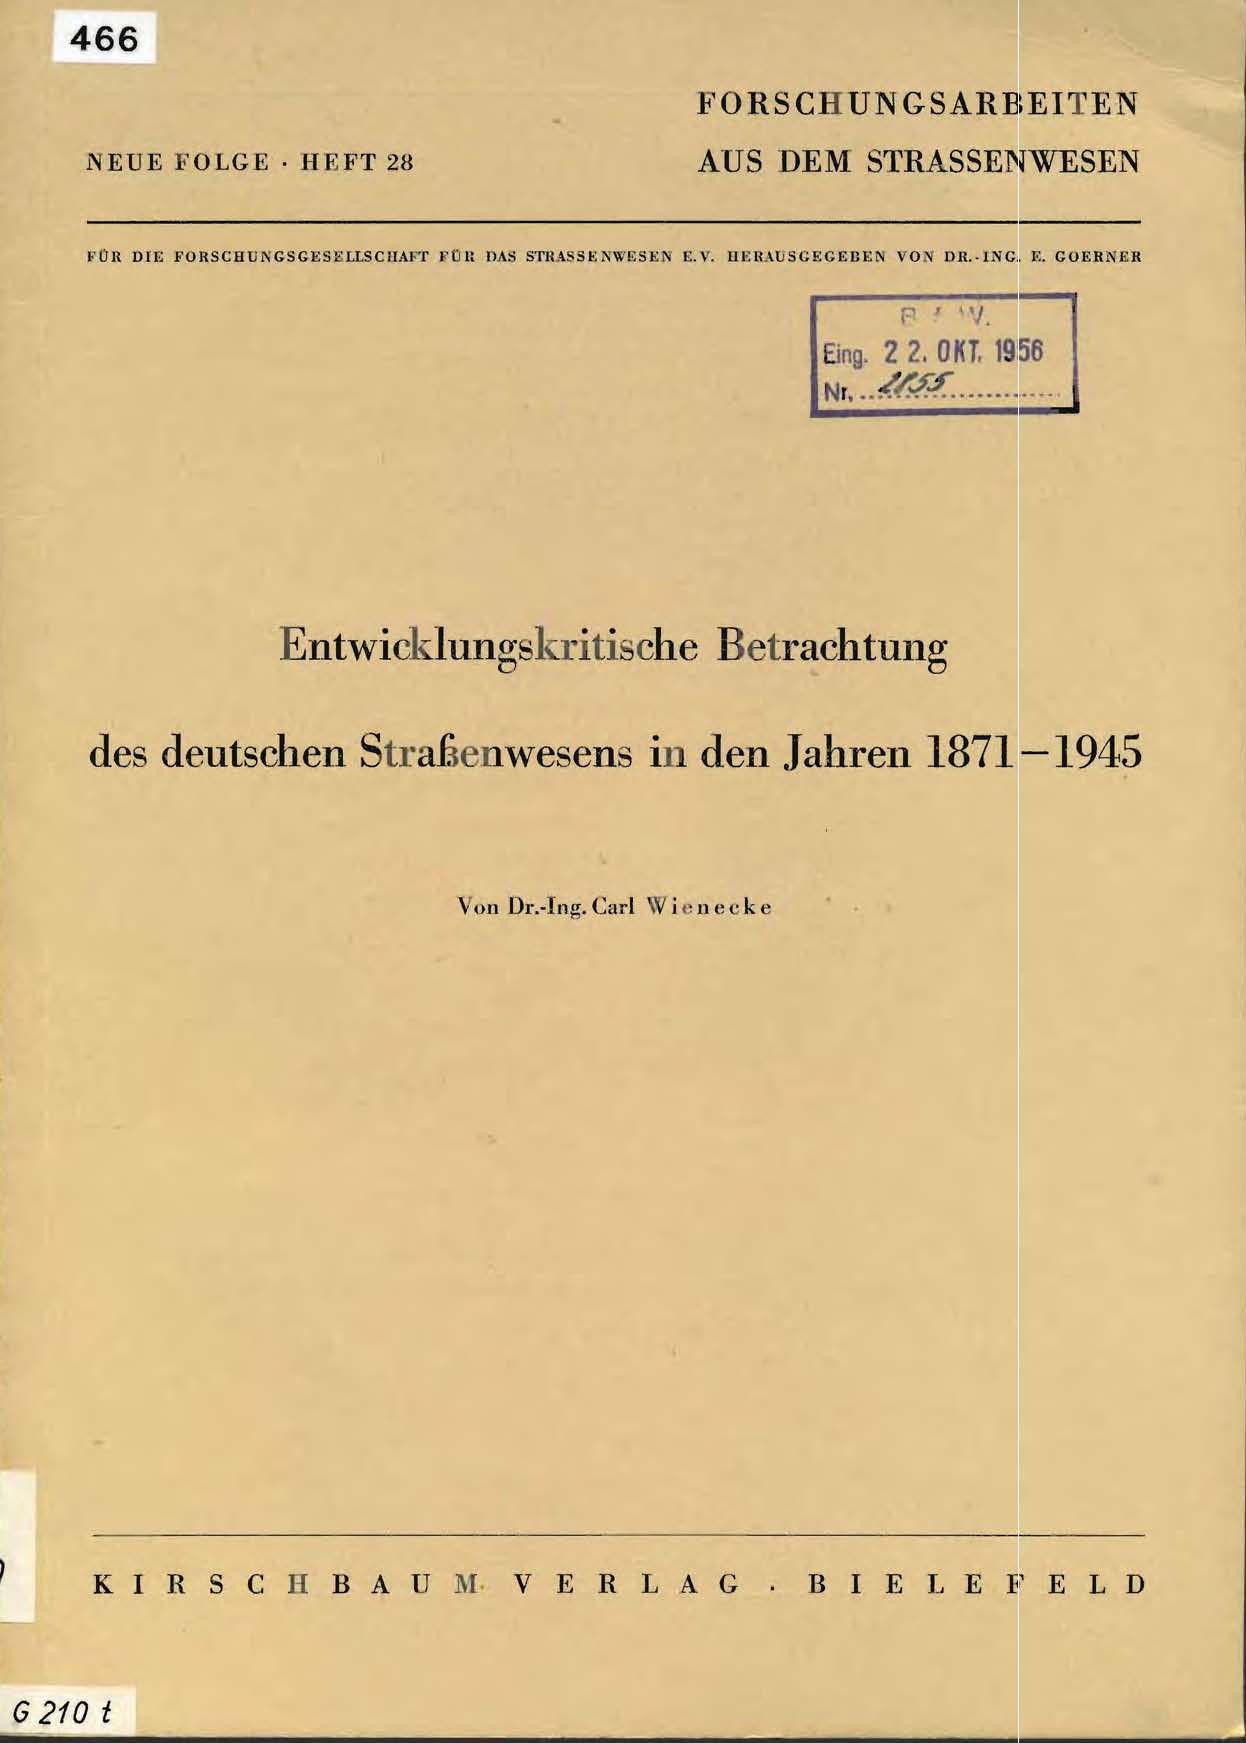 Entwicklungskritische Betrachtung des deutschen Straßenwesens in den Jahren 1871 - 1945